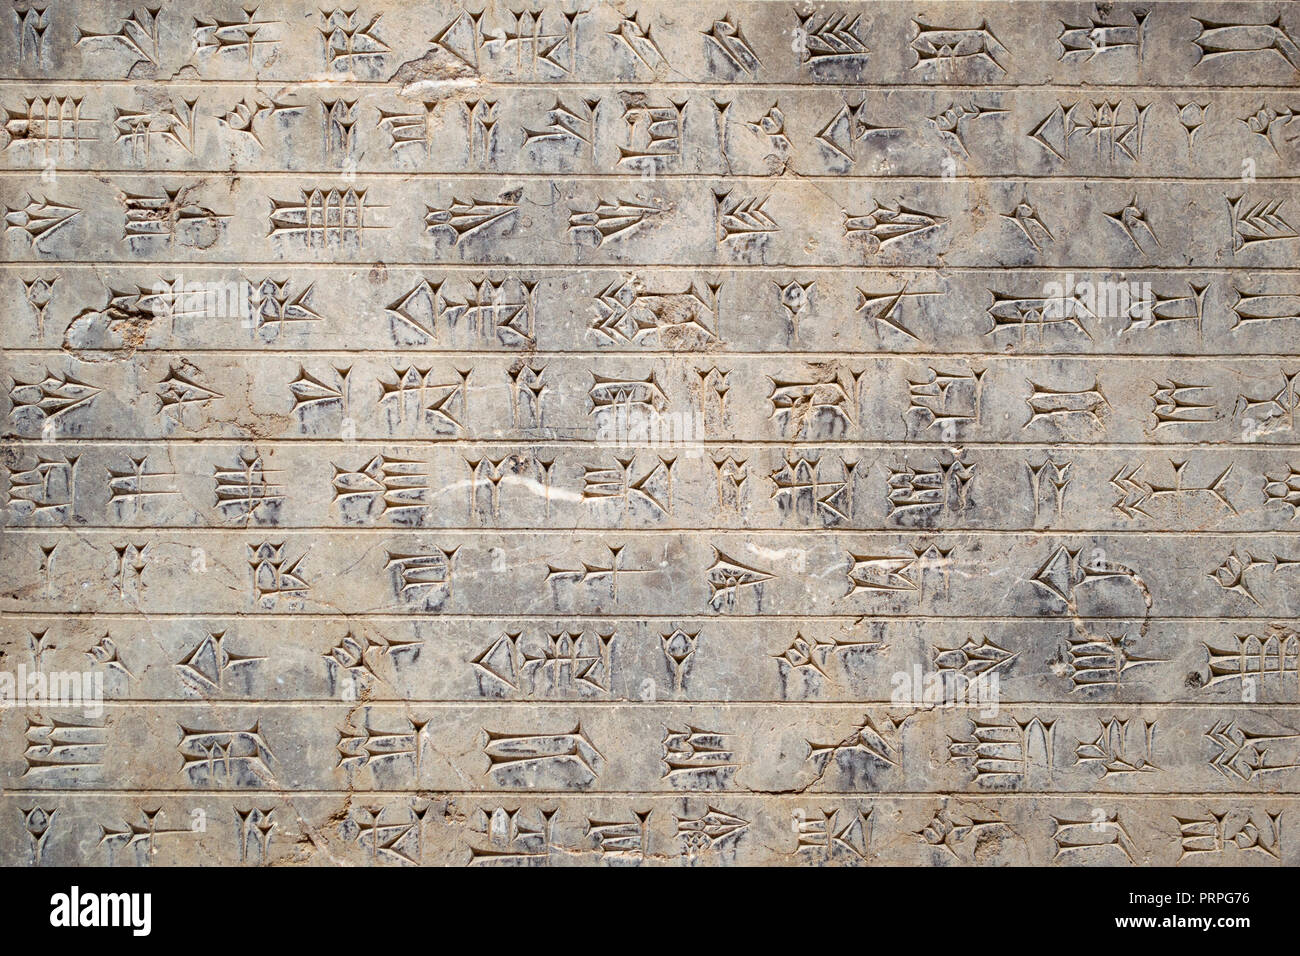 Eine alte persische Gravur auf einer Wand der Apadana in Persepolis, Iran Stockfoto